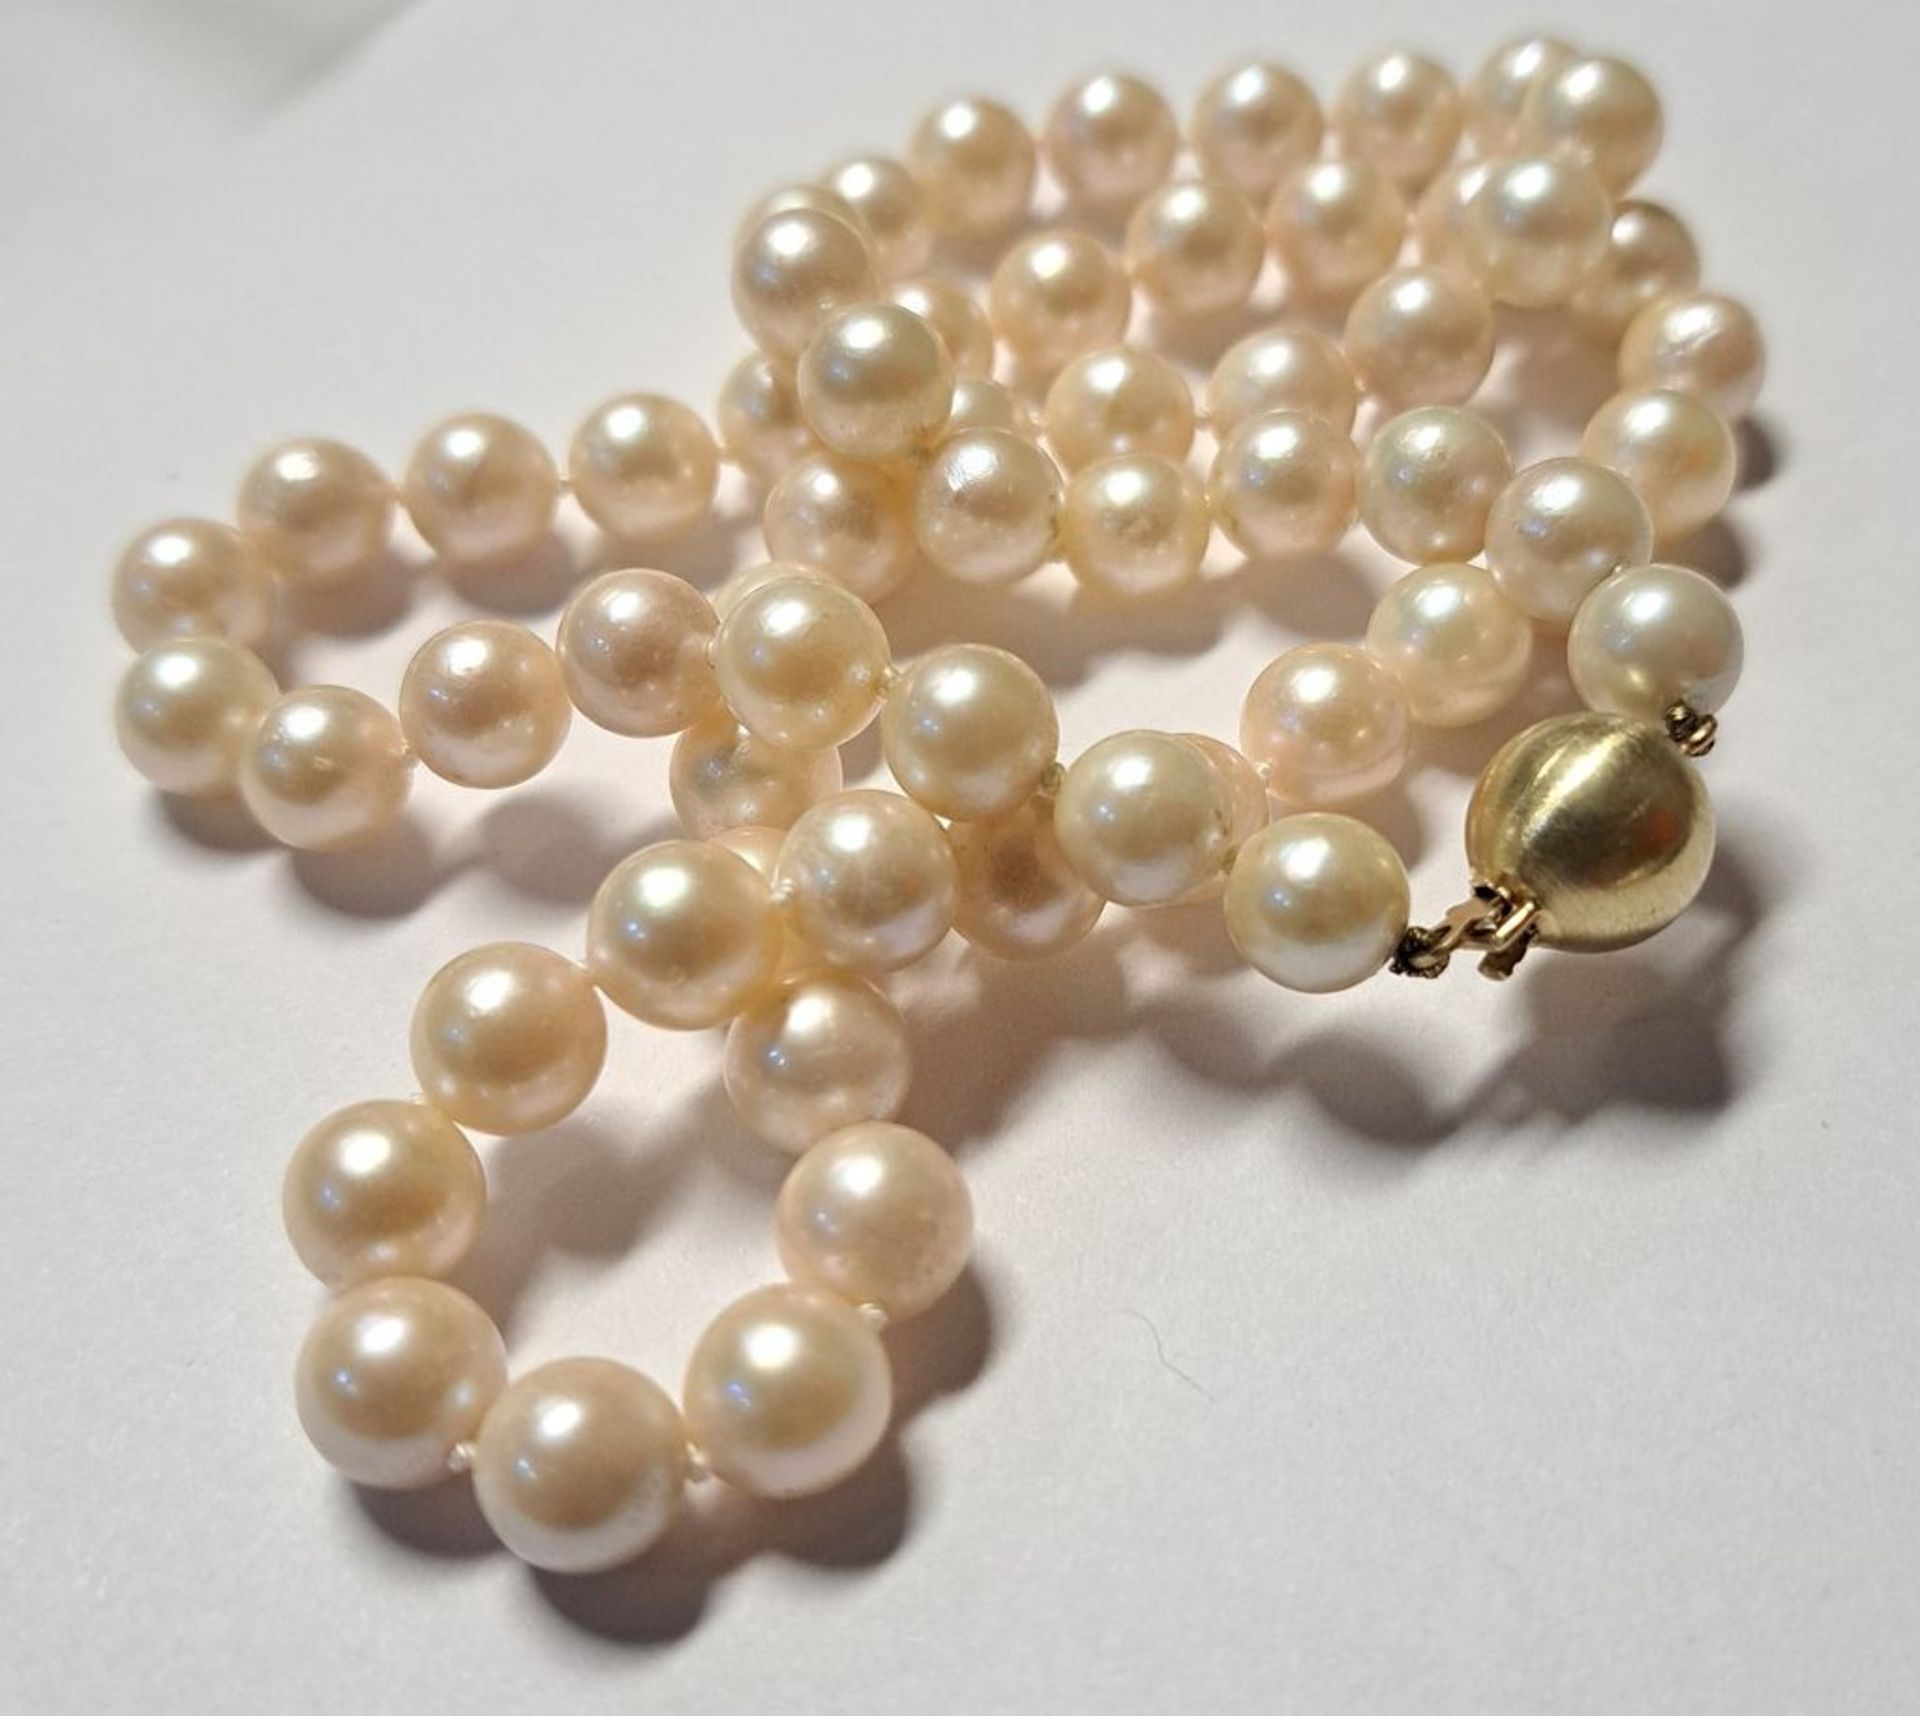 Perlenkette mit 585 GG Verschluss ca. 46cm lang - Image 2 of 3